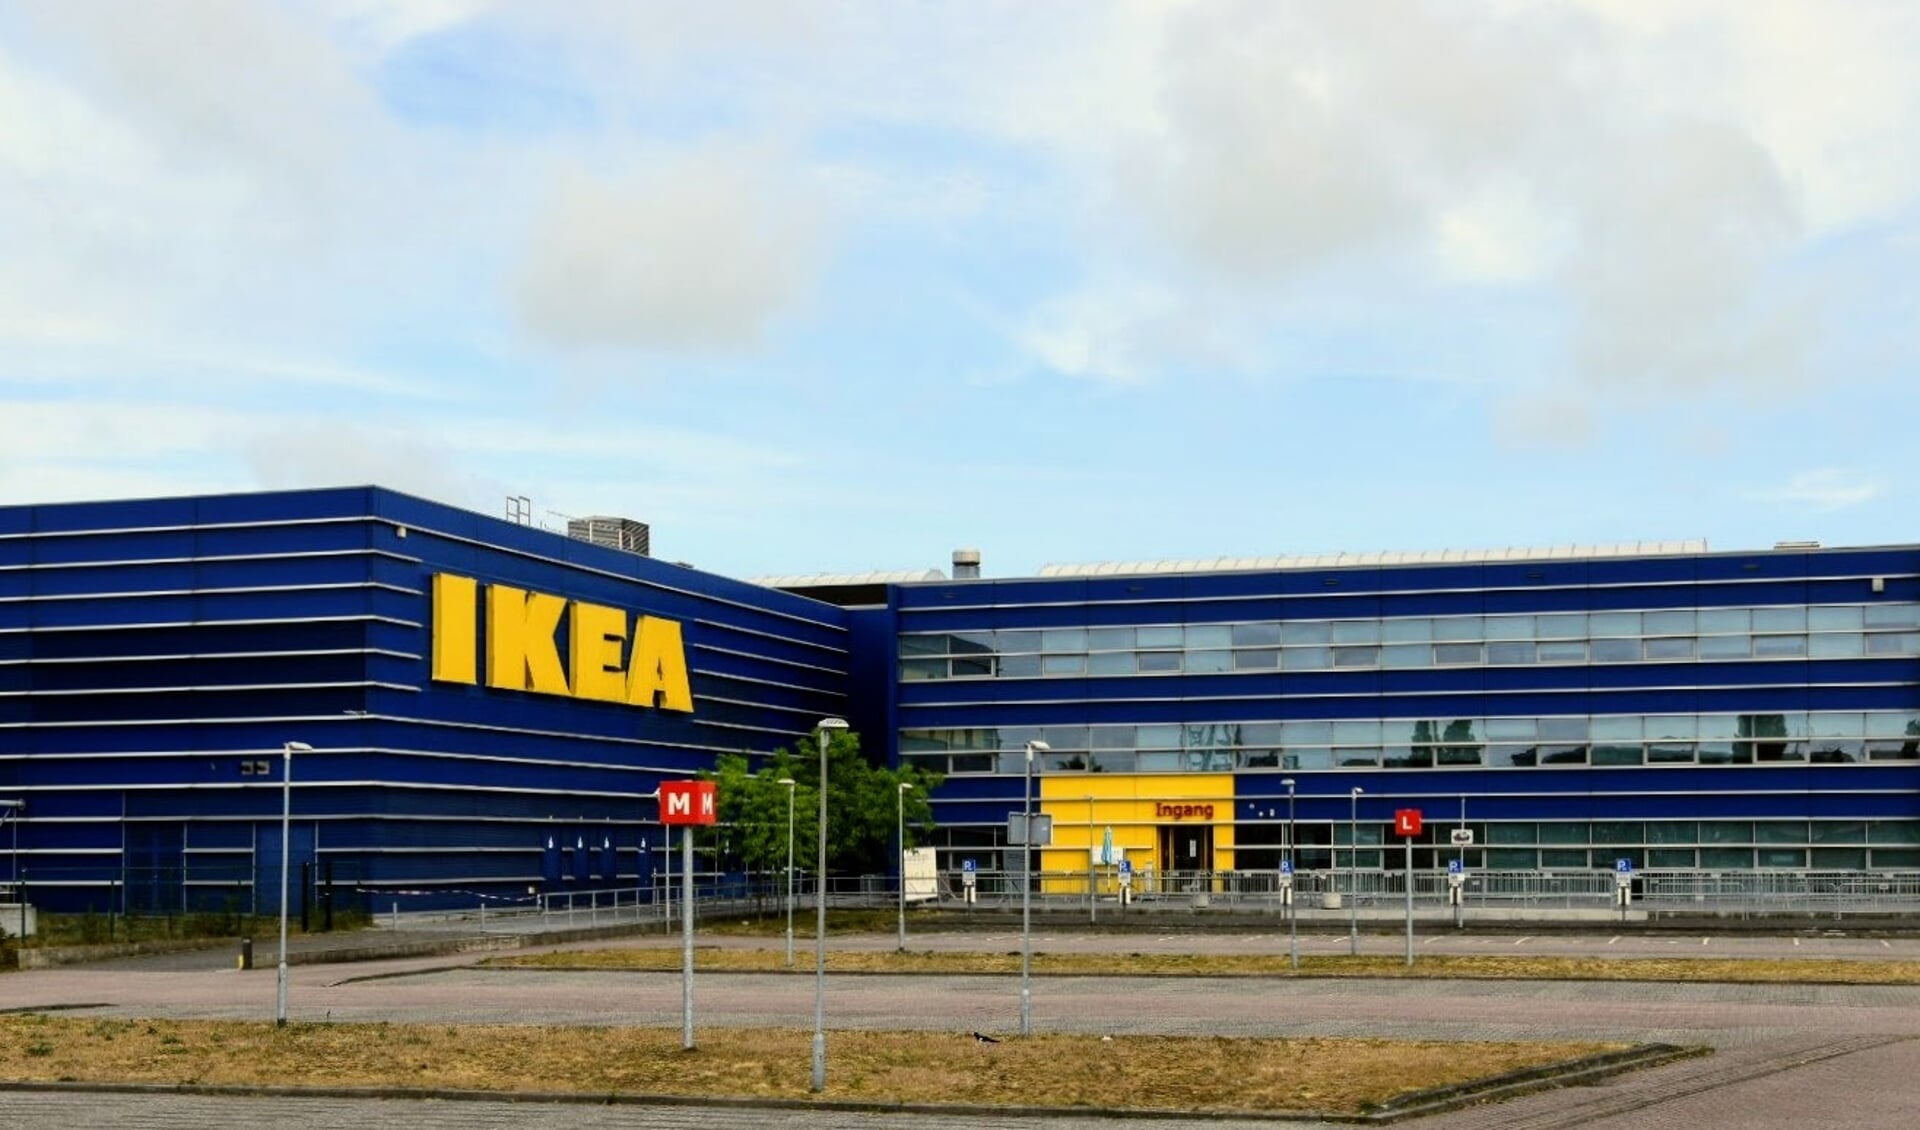 Medewerkers van Ikea krijgen een extraatje dat kan oplopen tot ongeveer 850 euro per persoon.